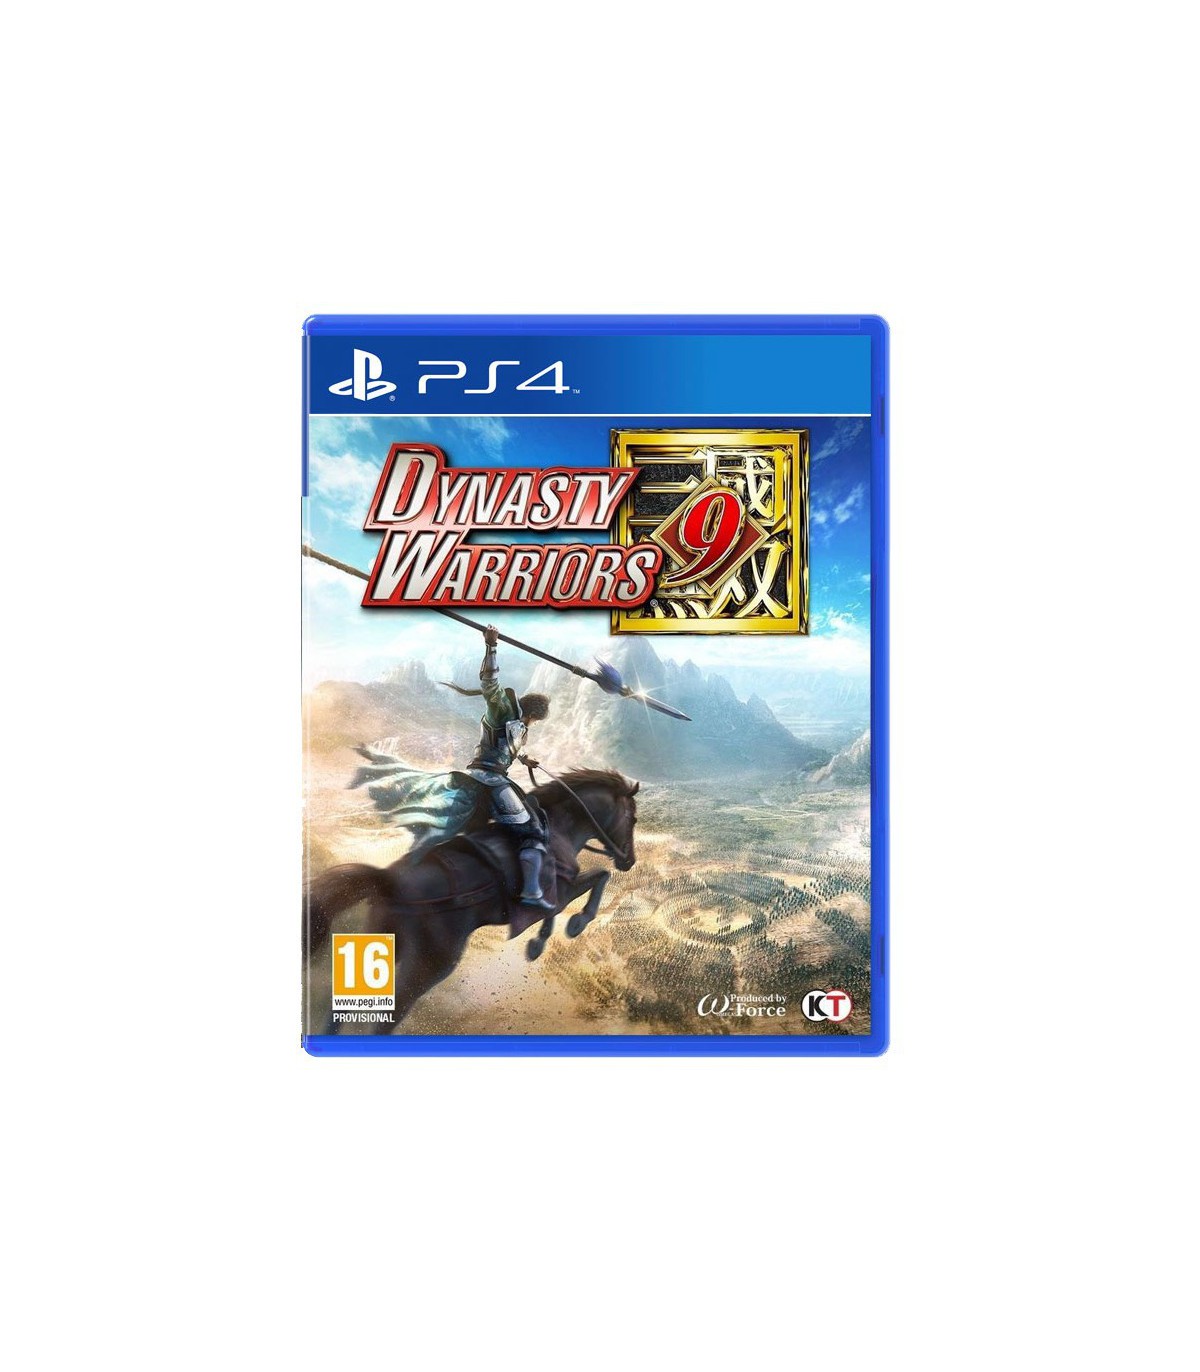 بازی Dynasty Warriors 9 کارکرده - پلی استیشن 4